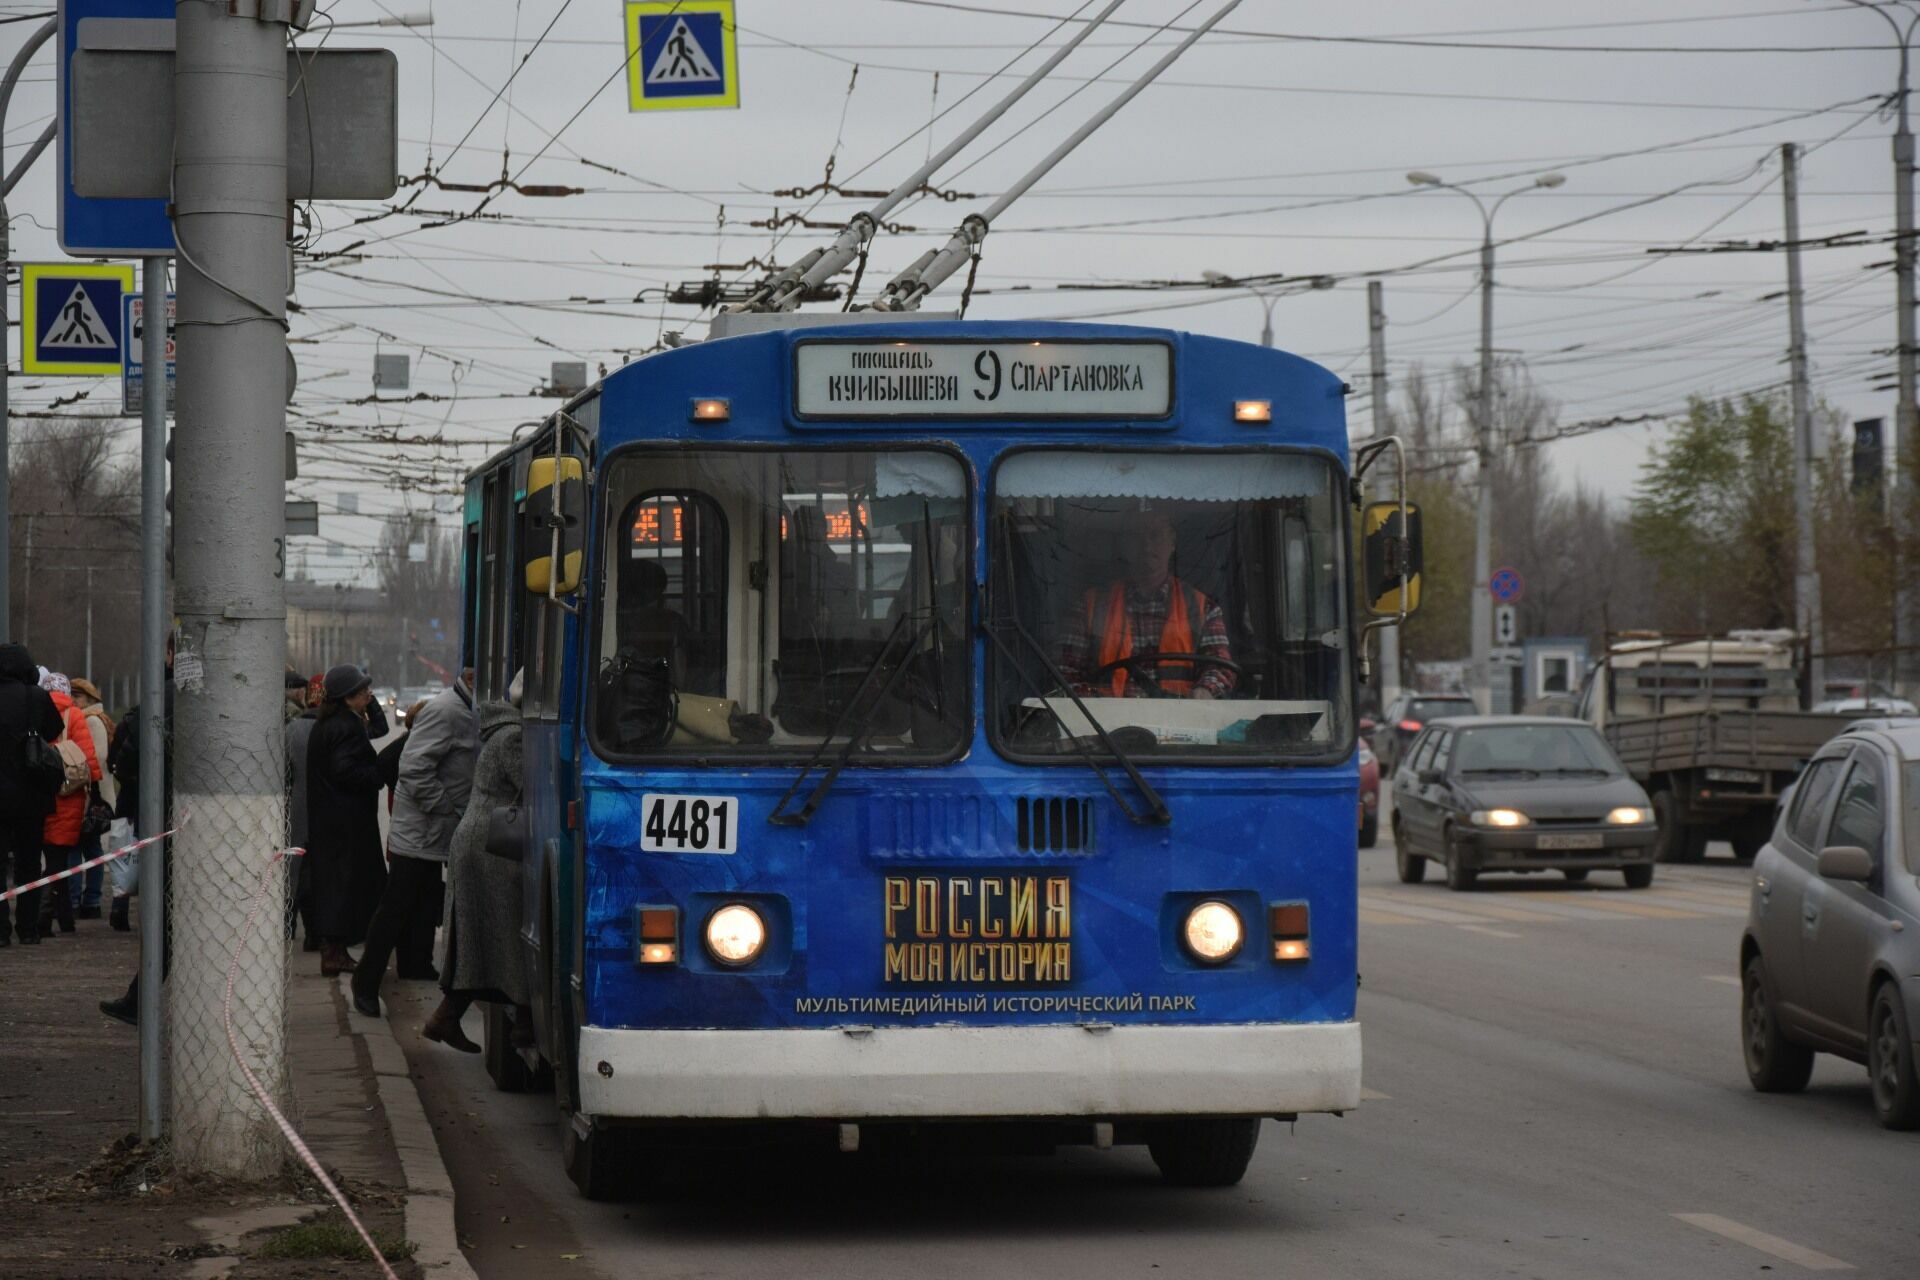 Нижегородцы получат московские троллейбусы на четыре месяца позднее обещанного